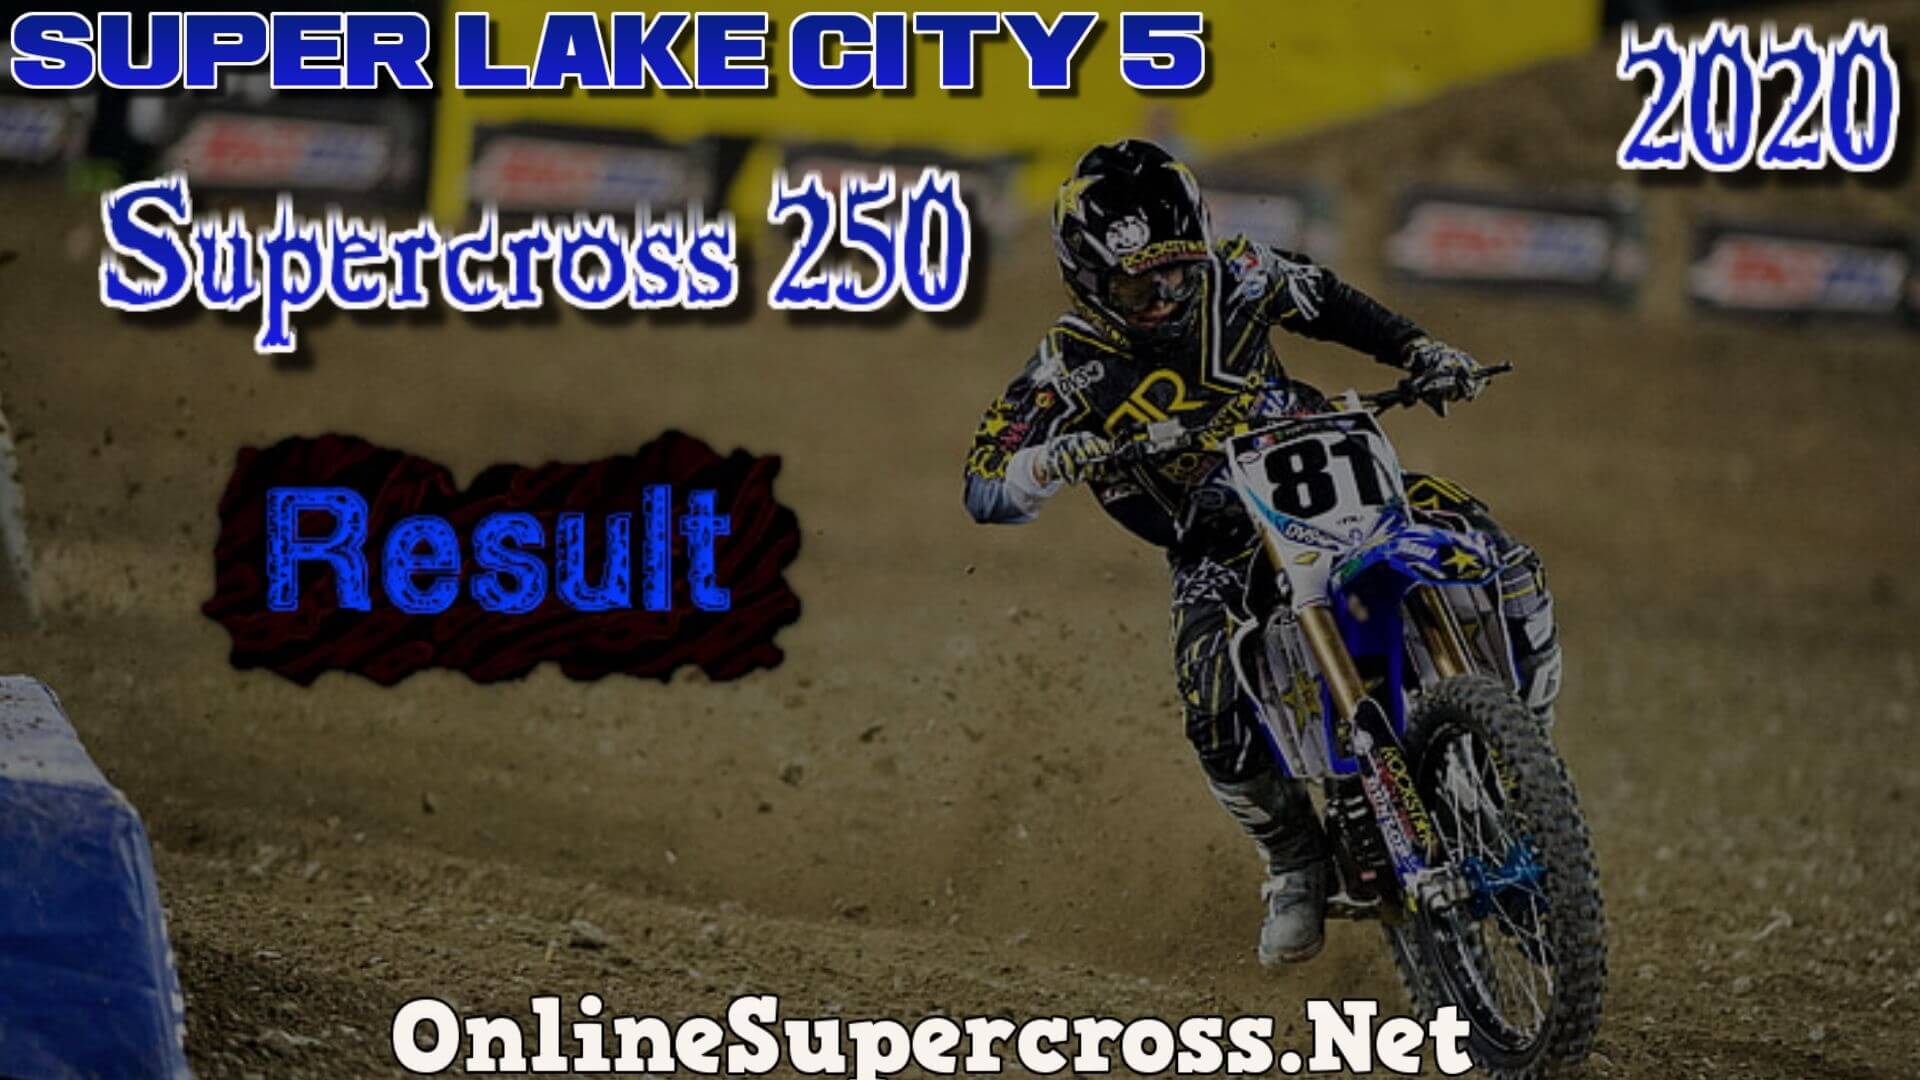 Super Lake City 5 Supercross 250 Result 2020